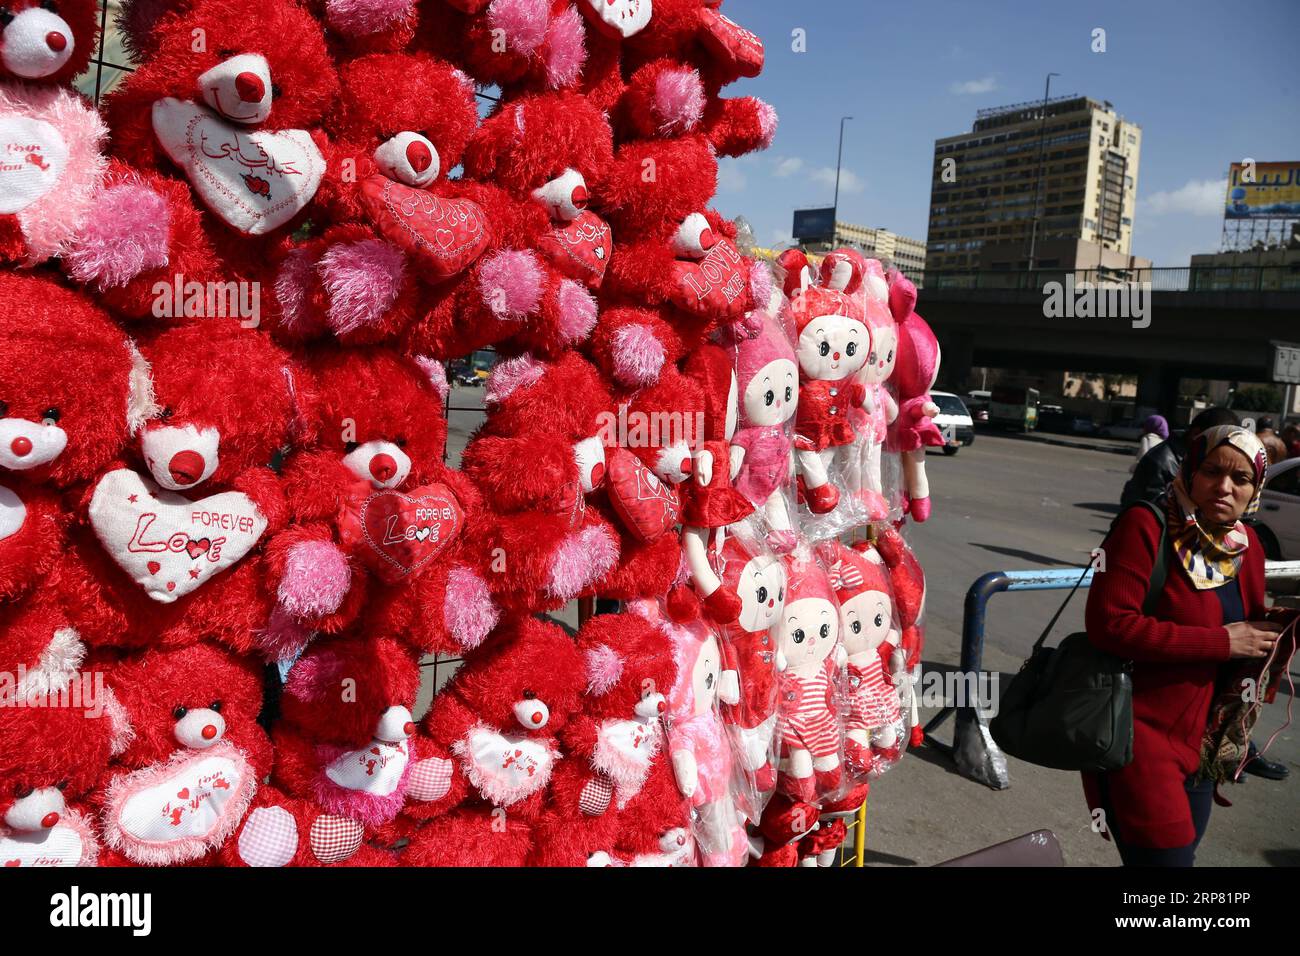 (190215) -- LE CAIRE, 15 février 2019 -- des cadeaux pour la Saint-Valentin sont vus dans un marché au Caire, en Égypte, le 14 février 2019. Les devantures de magasins ont été décorées avec des ours en peluche, des coeurs rouges et des roses dans la capitale égyptienne le Caire jeudi alors que les Égyptiens marquaient la Saint-Valentin. EGYPTE-LE CAIRE-SAINT VALENTIN AhmedxGomaa PUBLICATIONxNOTxINxCHN Banque D'Images